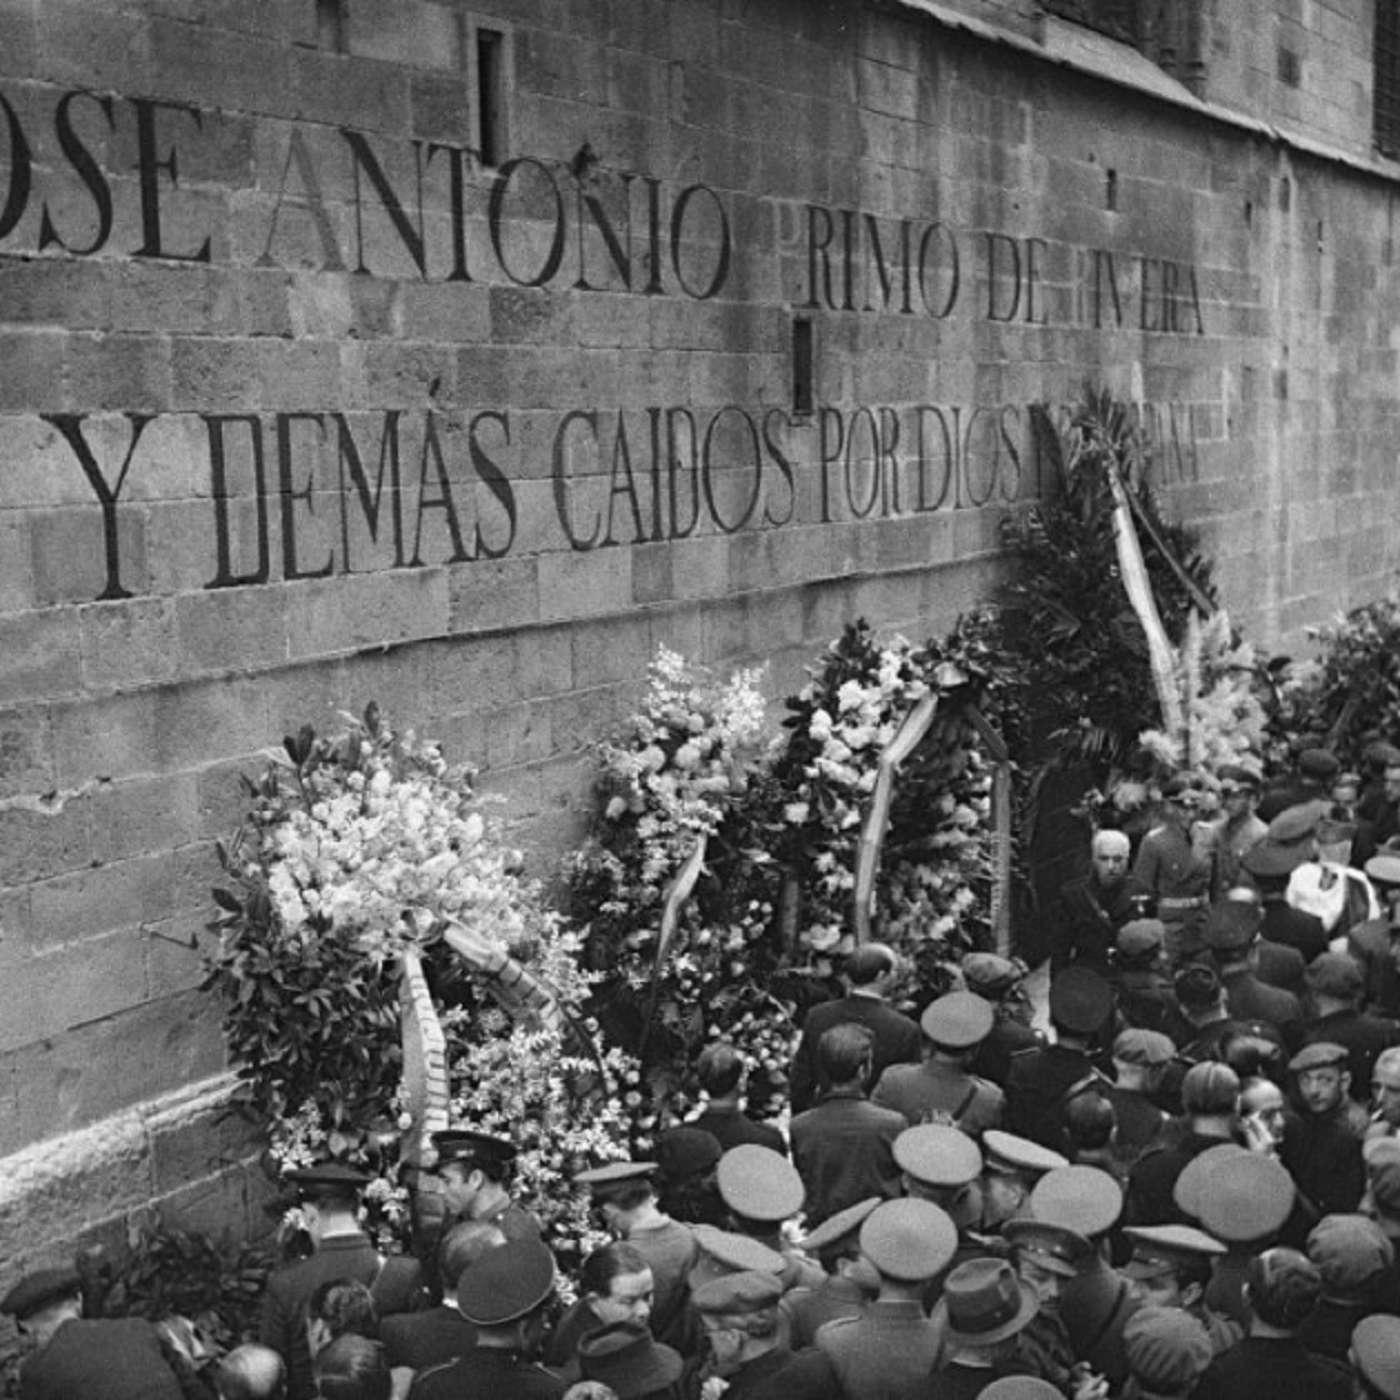 El régimen franquista rinde homenaje a los pistoleros anticatalanistas y antisindicalistas